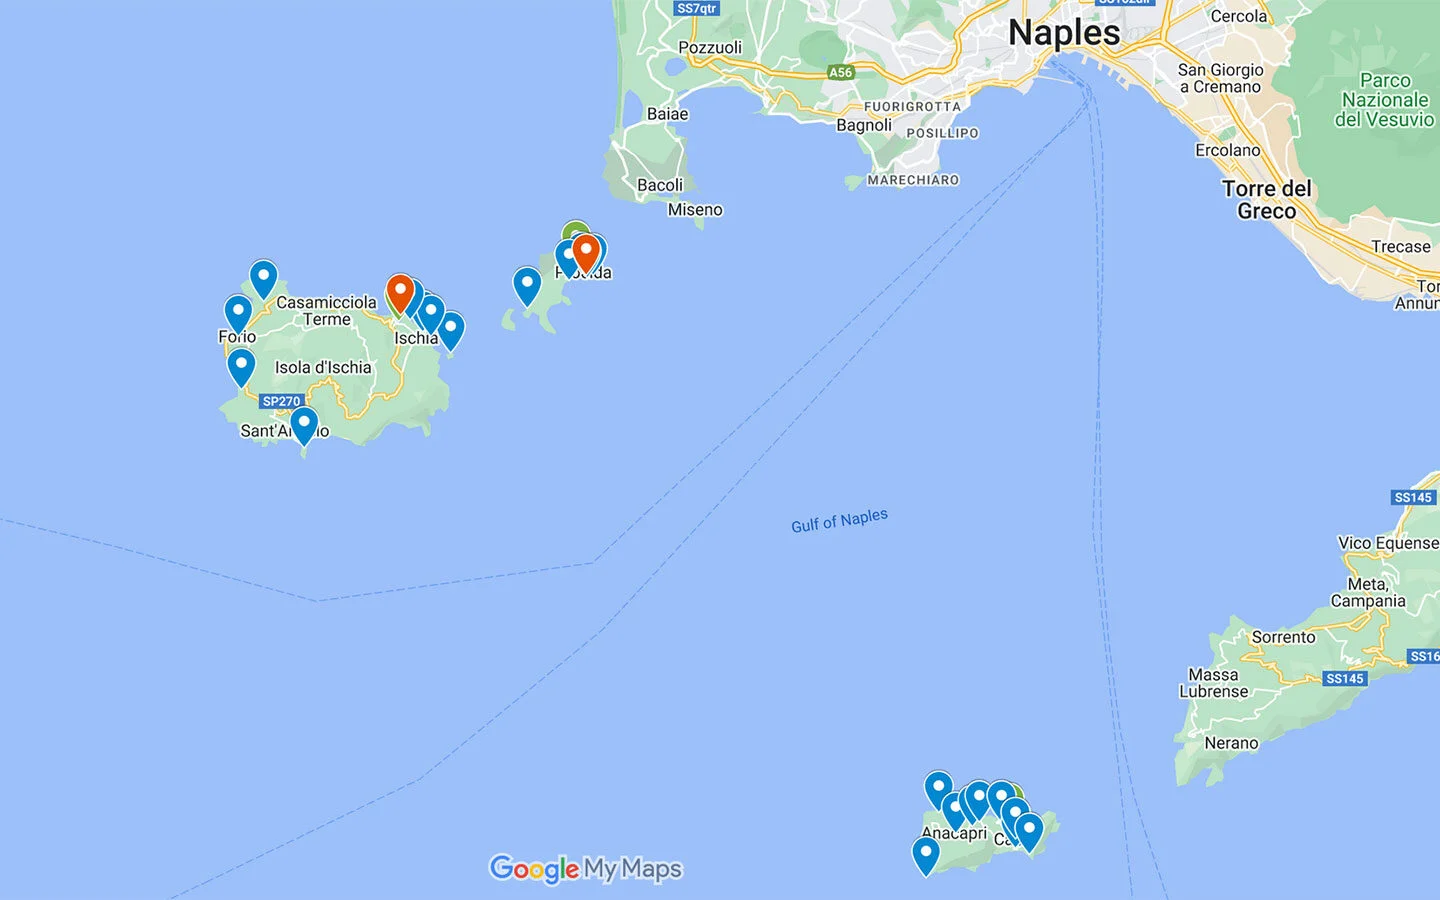 Capri, Ischia and Procida map